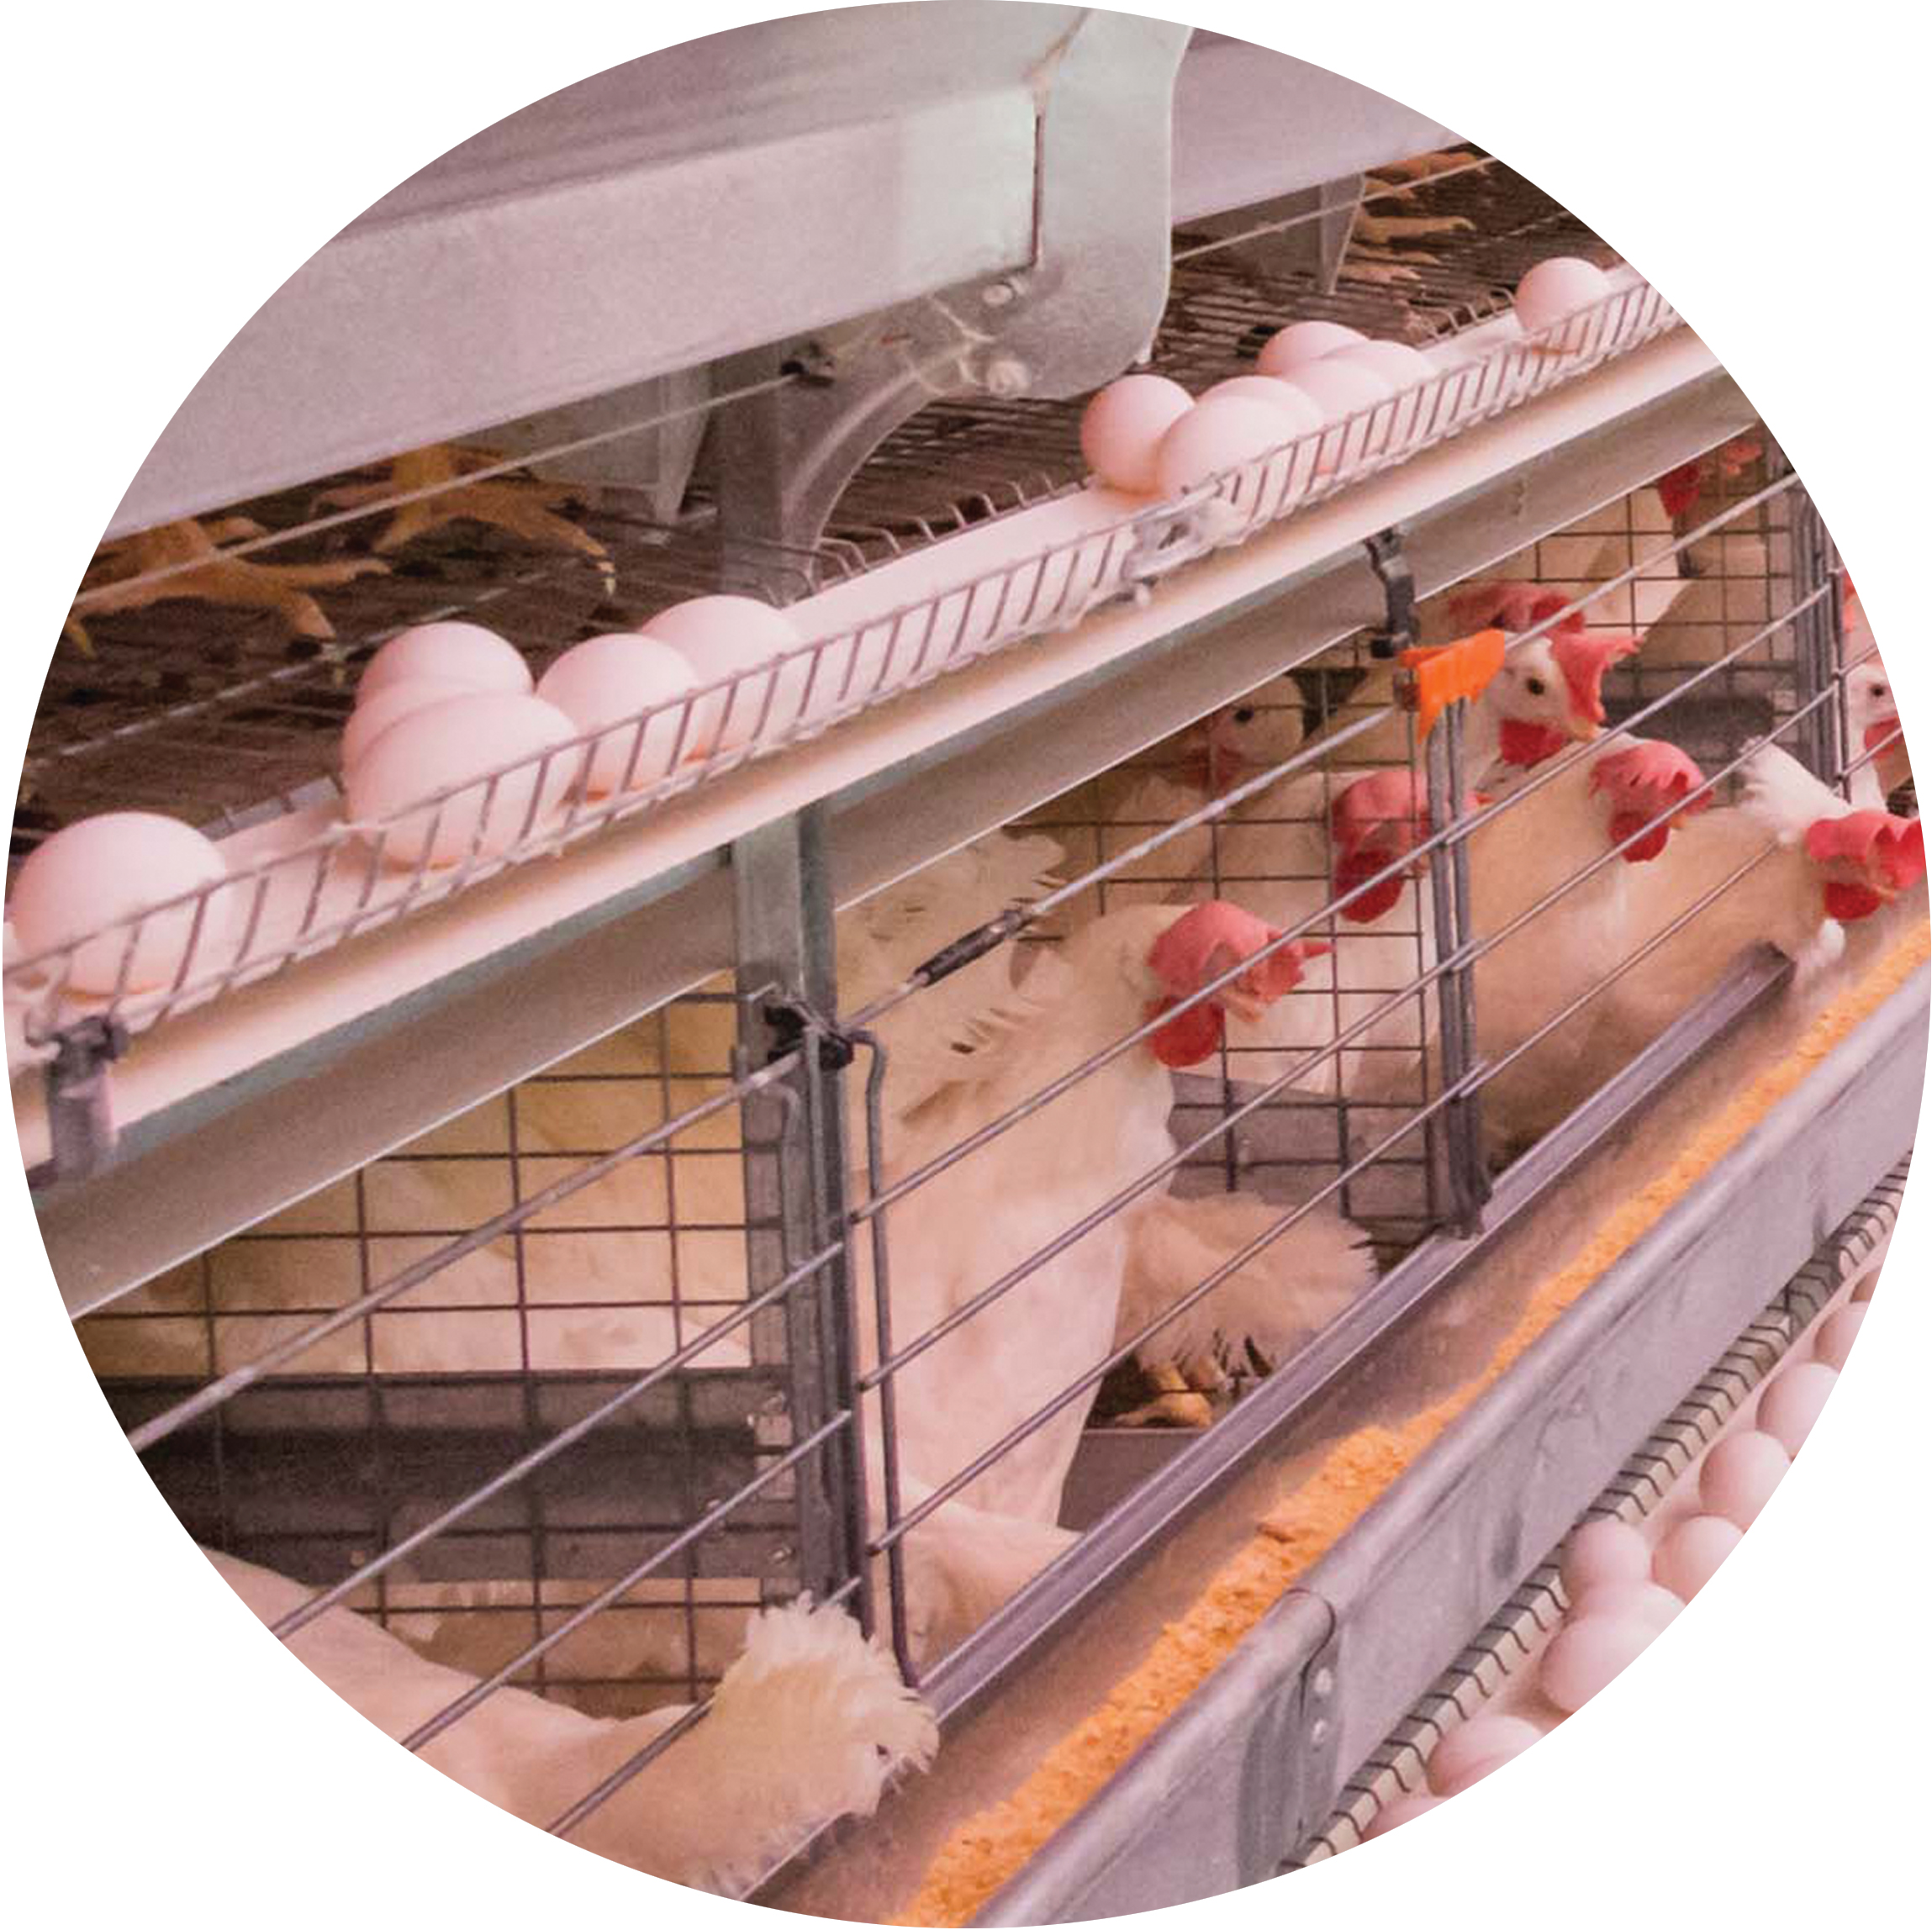 استاندارد های مورد نیاز در پروش مرغ تخمگذار